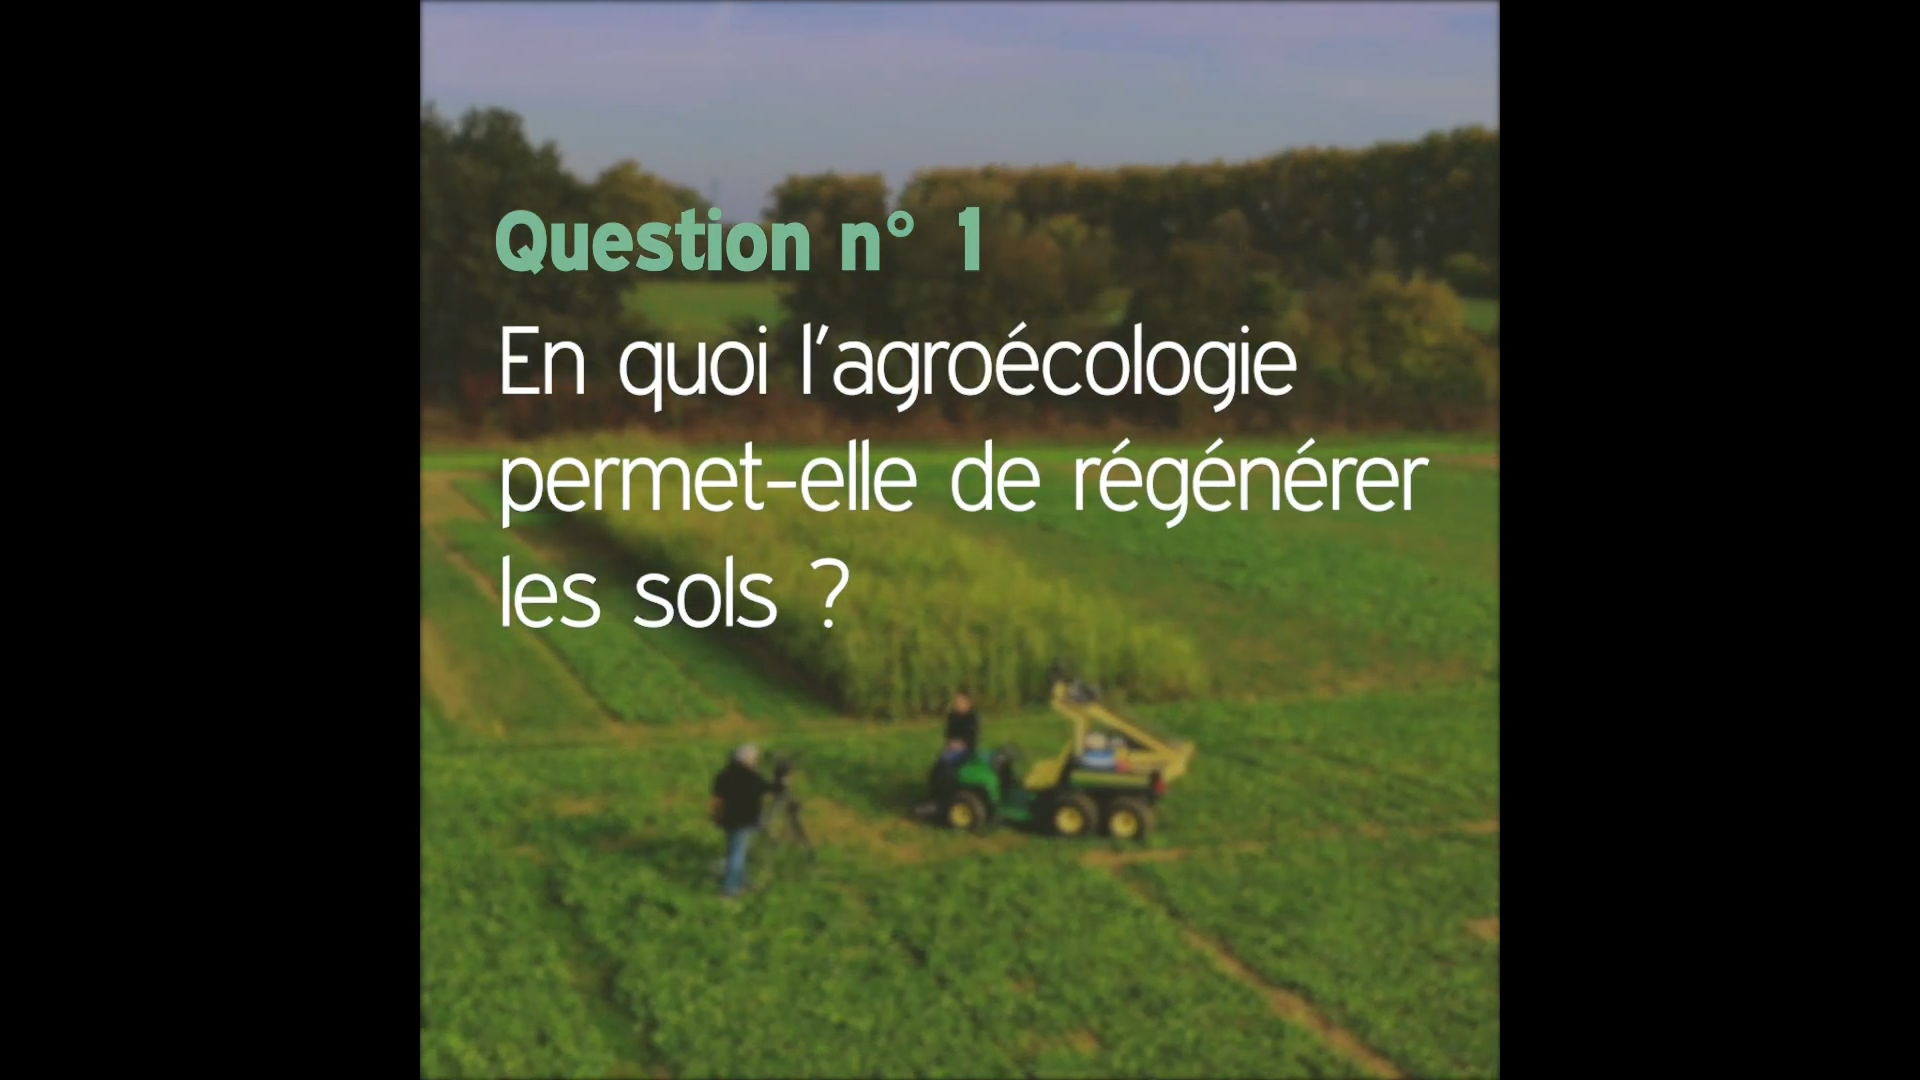 Afficher la vidéo Question n°1 : En quoi l'agroécologie permet-elle de régénérer les sols ?